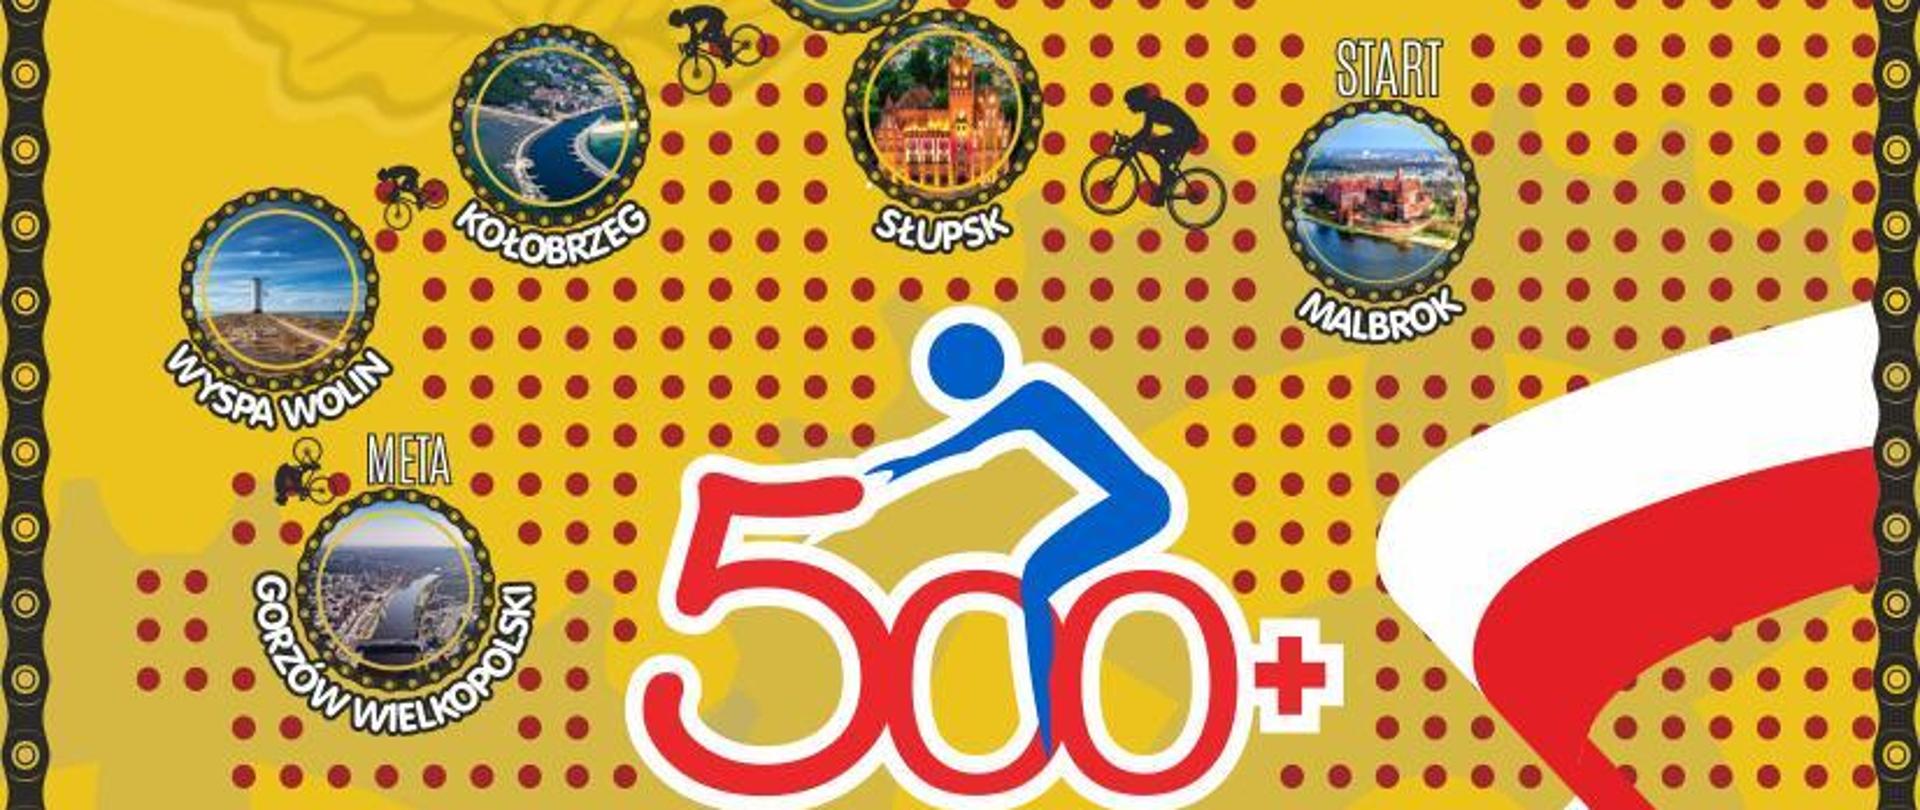 Plakat przedstawiający informacje na temat strażackiego rajdu rowerowego "500 kilometrów +"